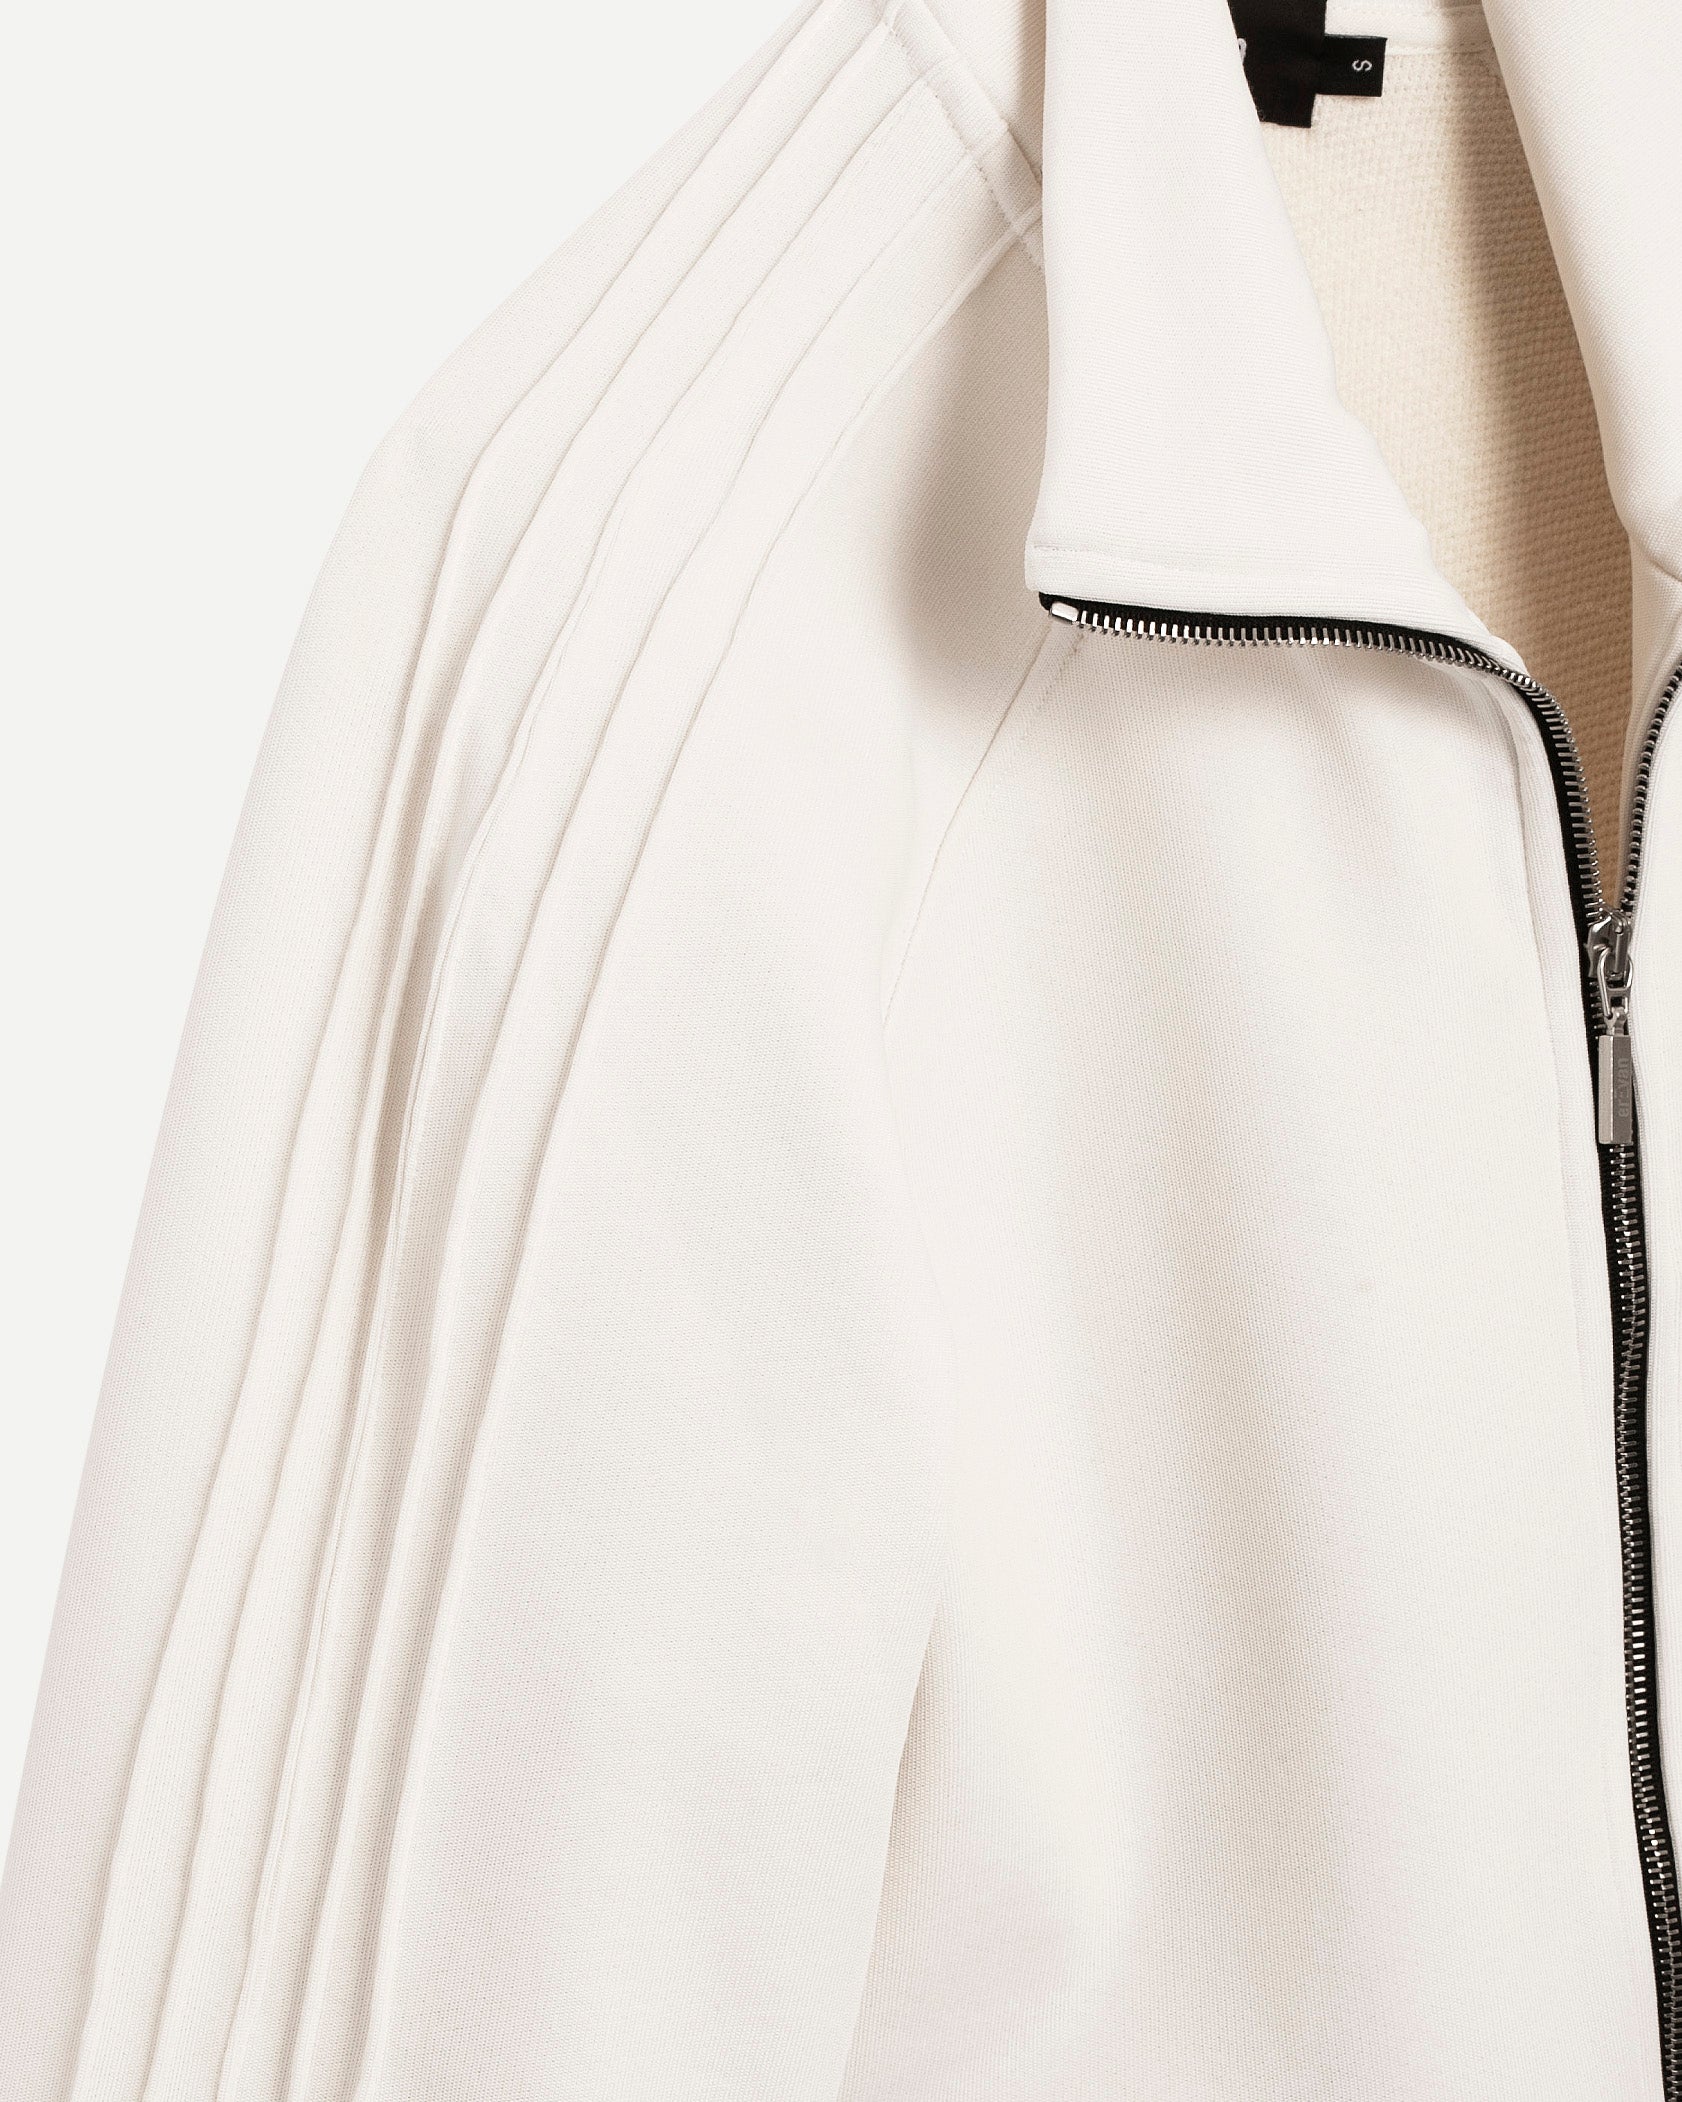 Veste de luxe pour homme Erevan, coupe raglan, ceinture et poignets élastiques, cinq nervures manches, en jersey de coton et polyester, fabriquée en france